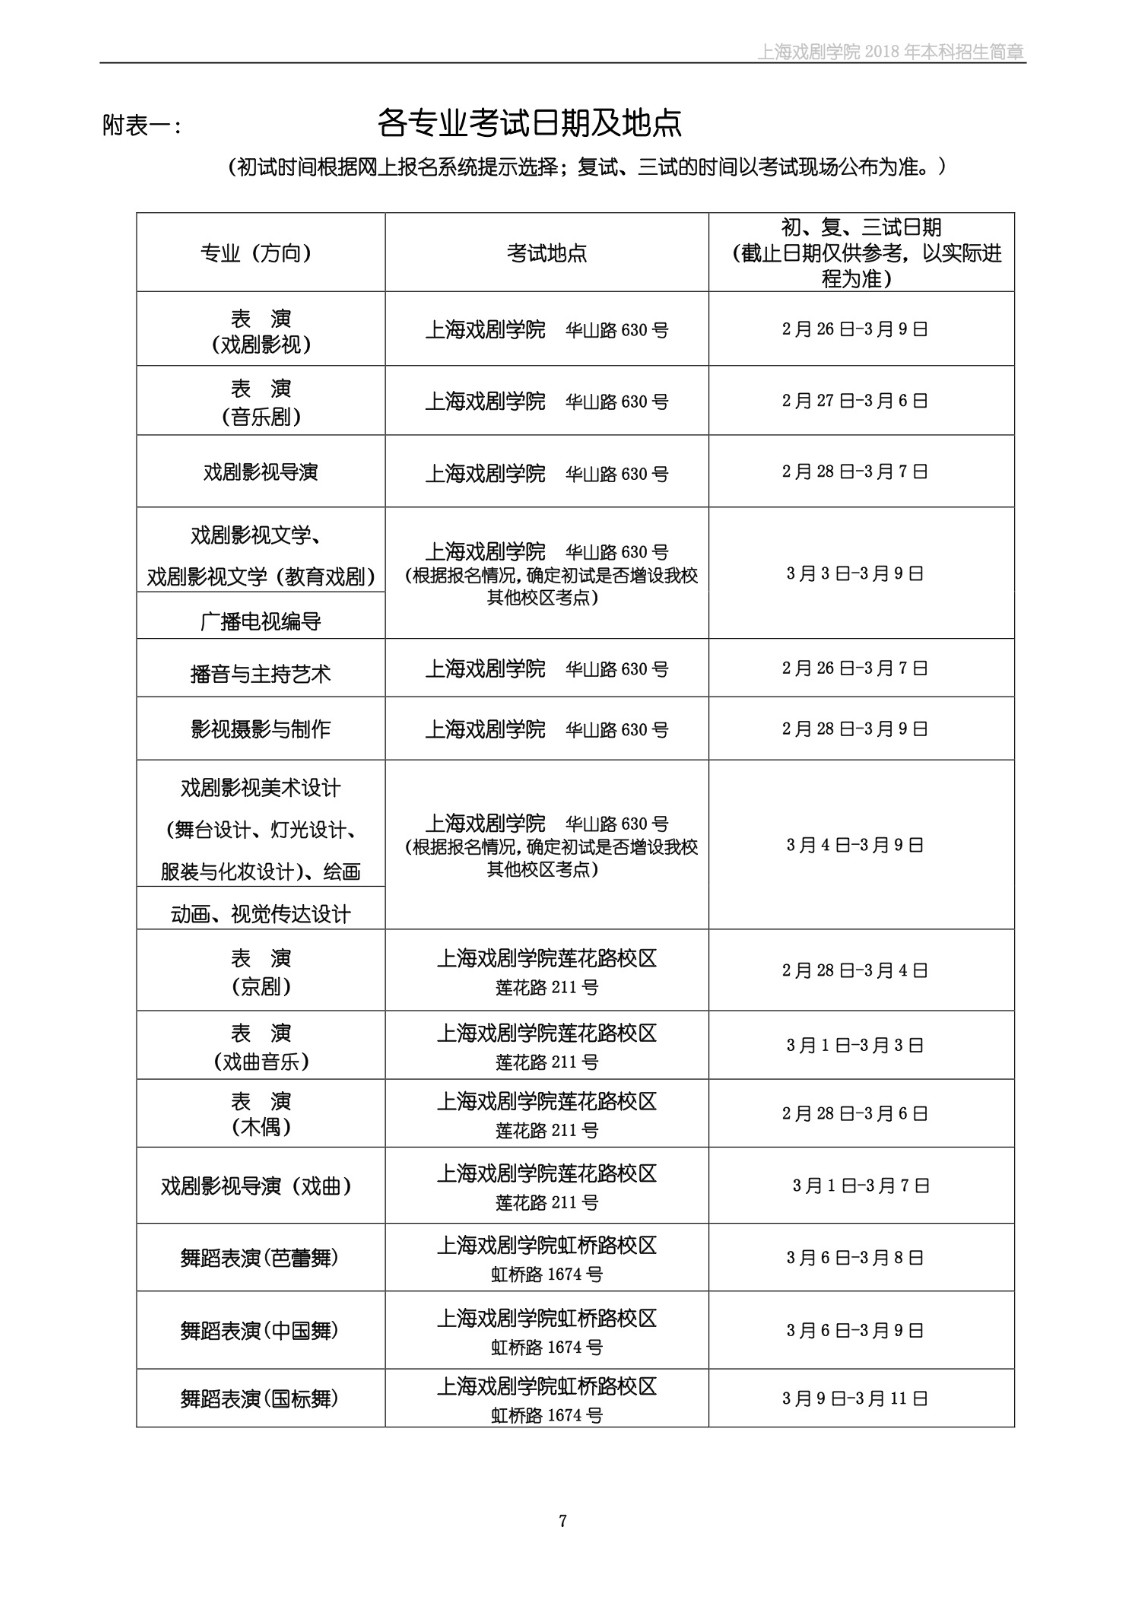 上海戏剧学院2018年本科招生简章-page7.jpeg